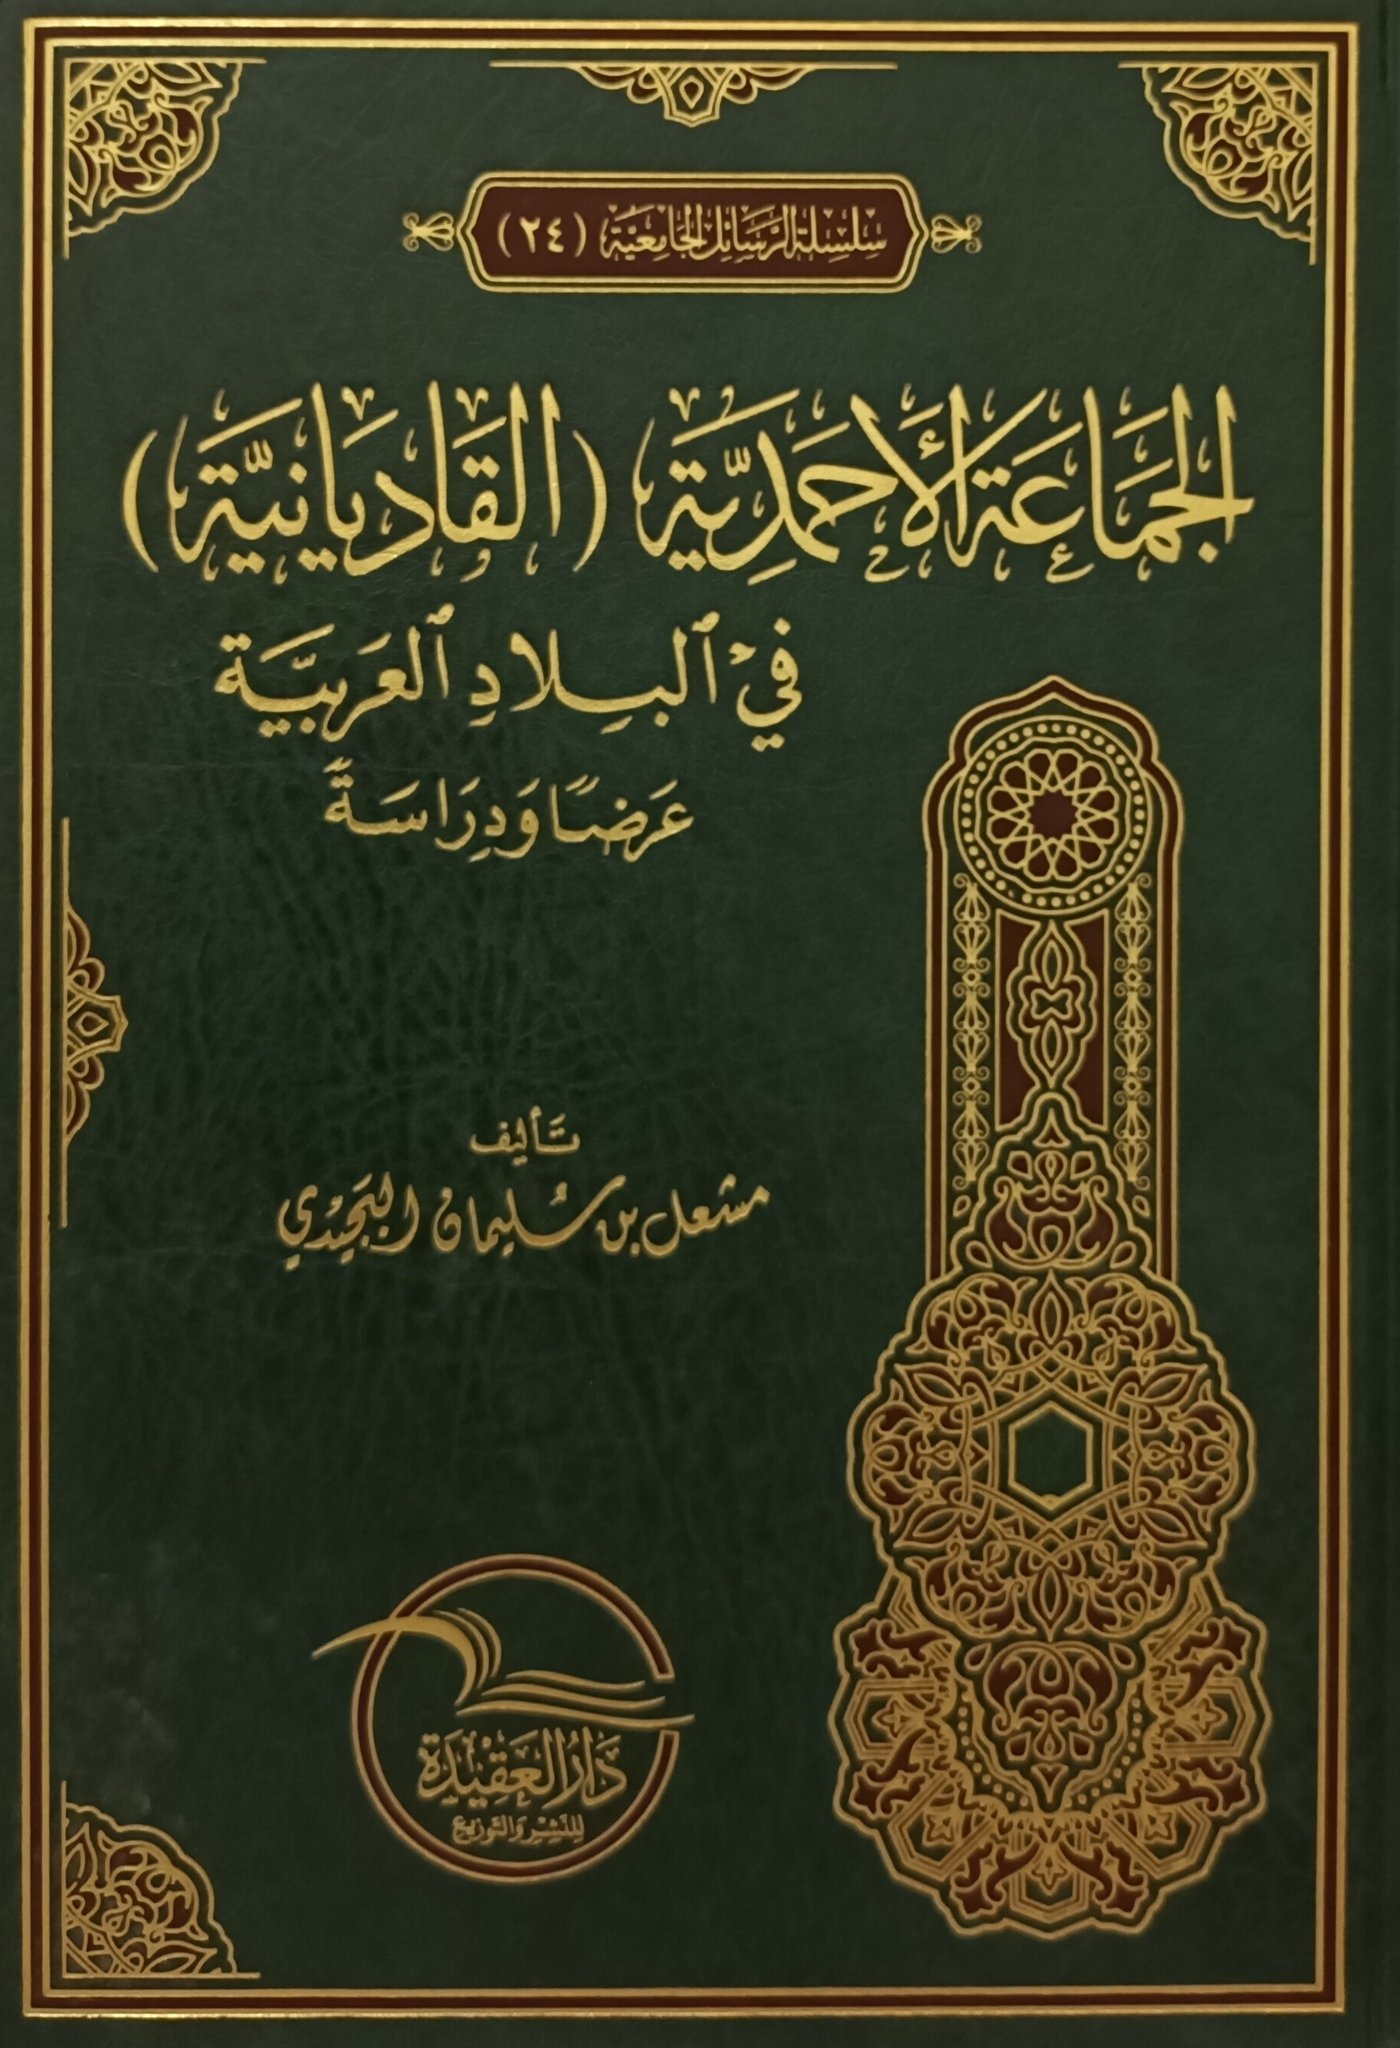 الجماعة الأحمدية (القاديانية) في البلاد العربية عرضا ودراسة